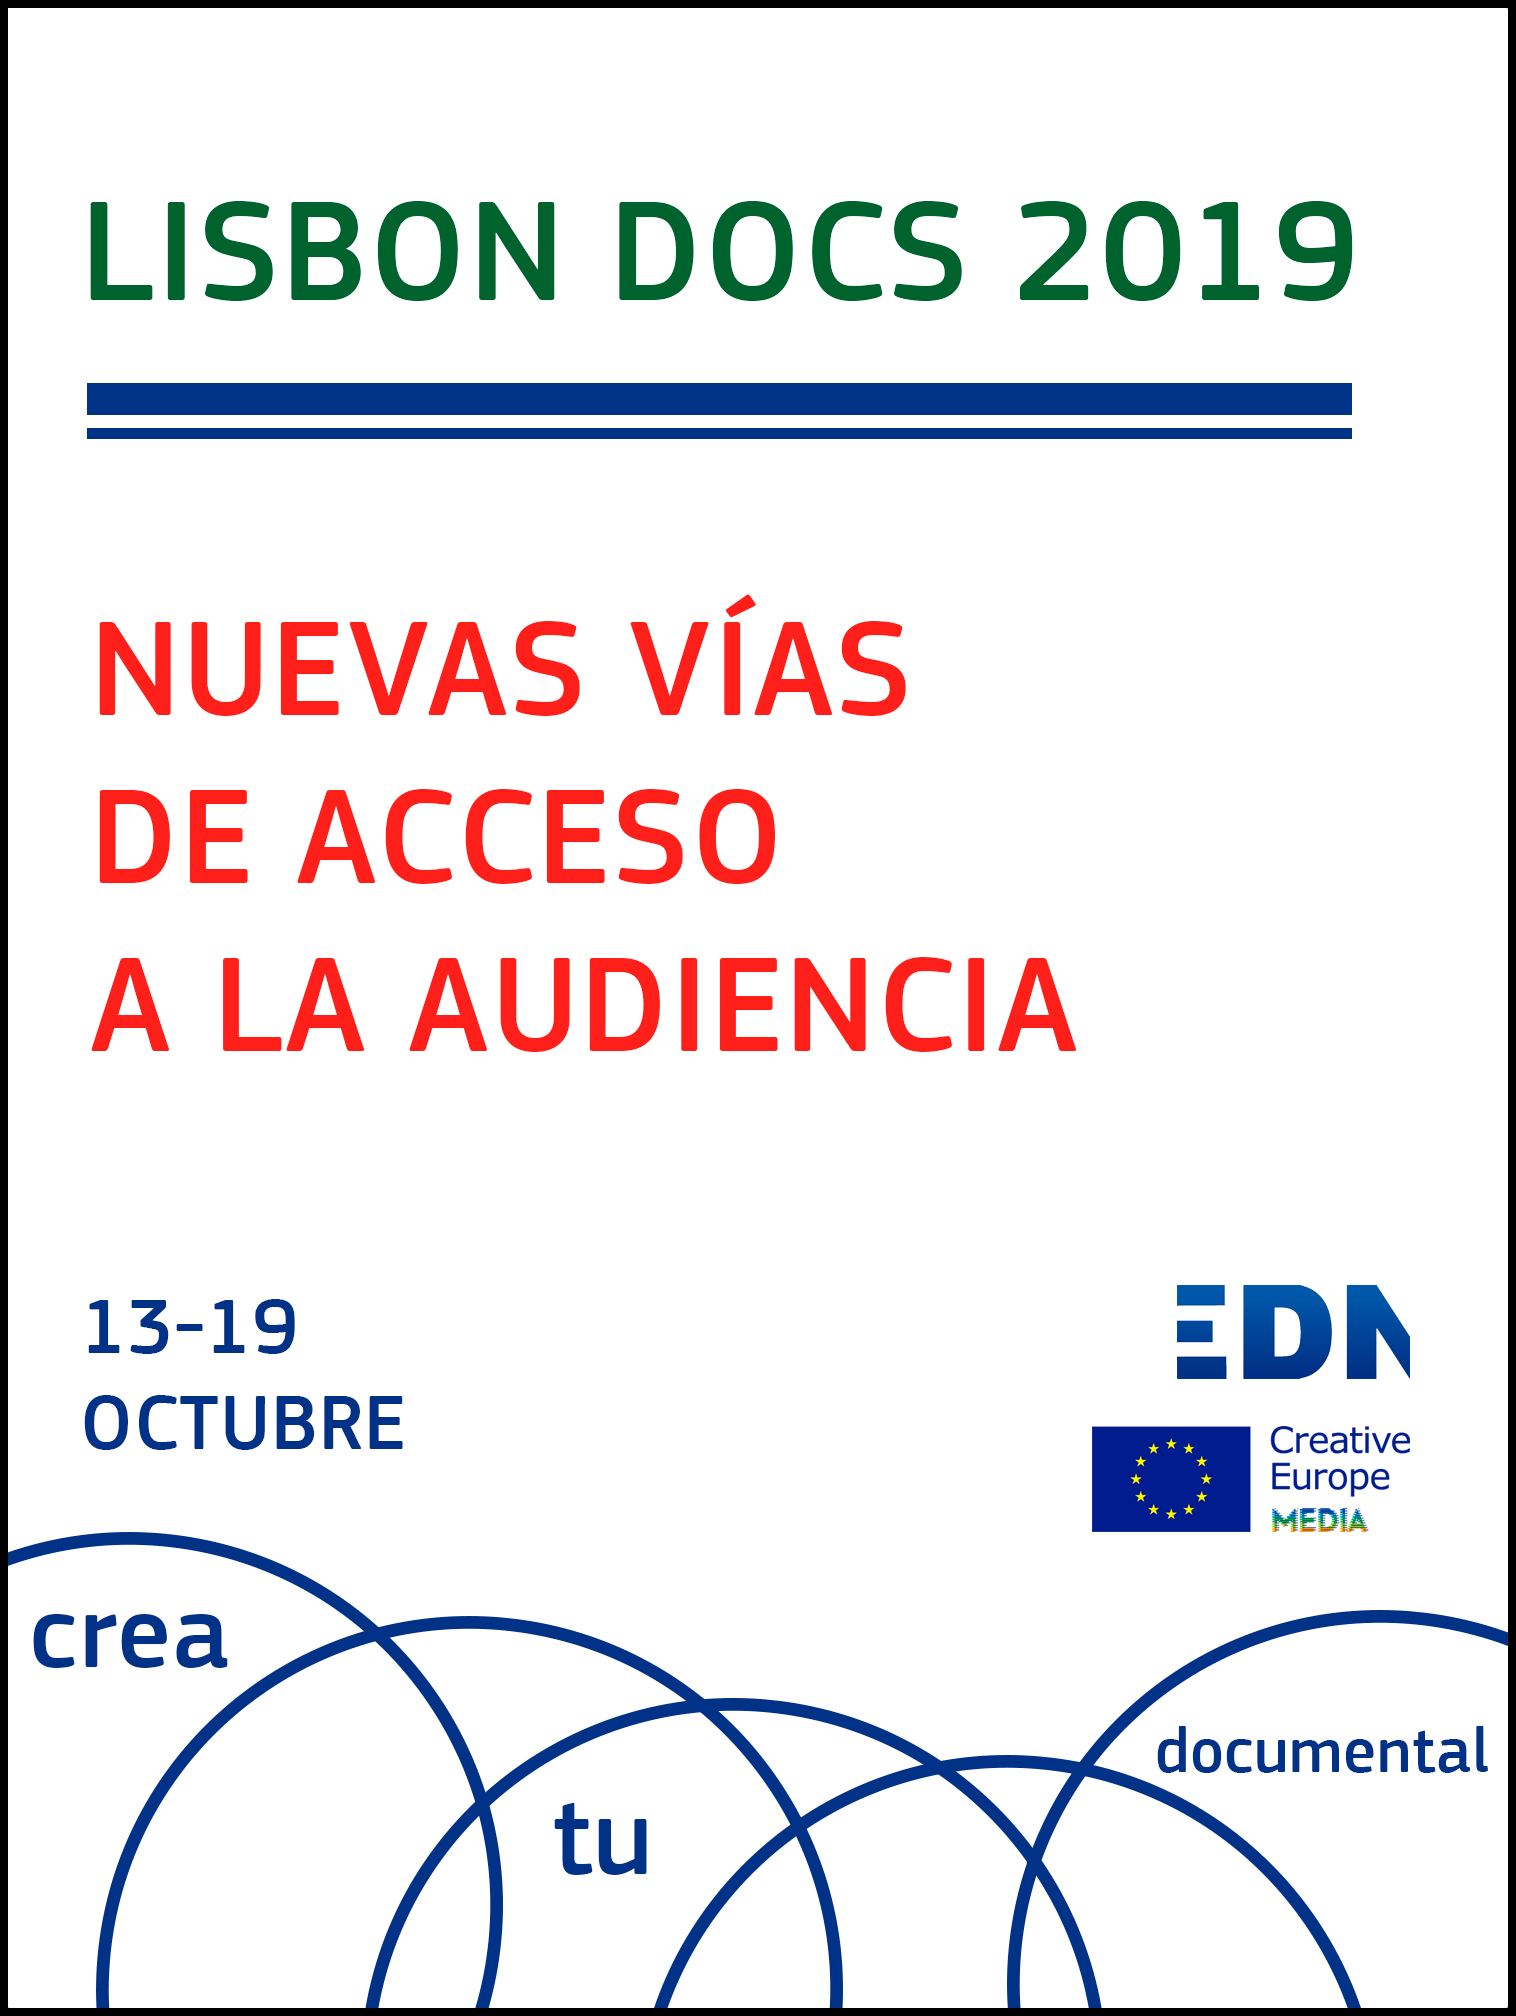 Lisbon Docs 2019 Imagen Interior Con bordes